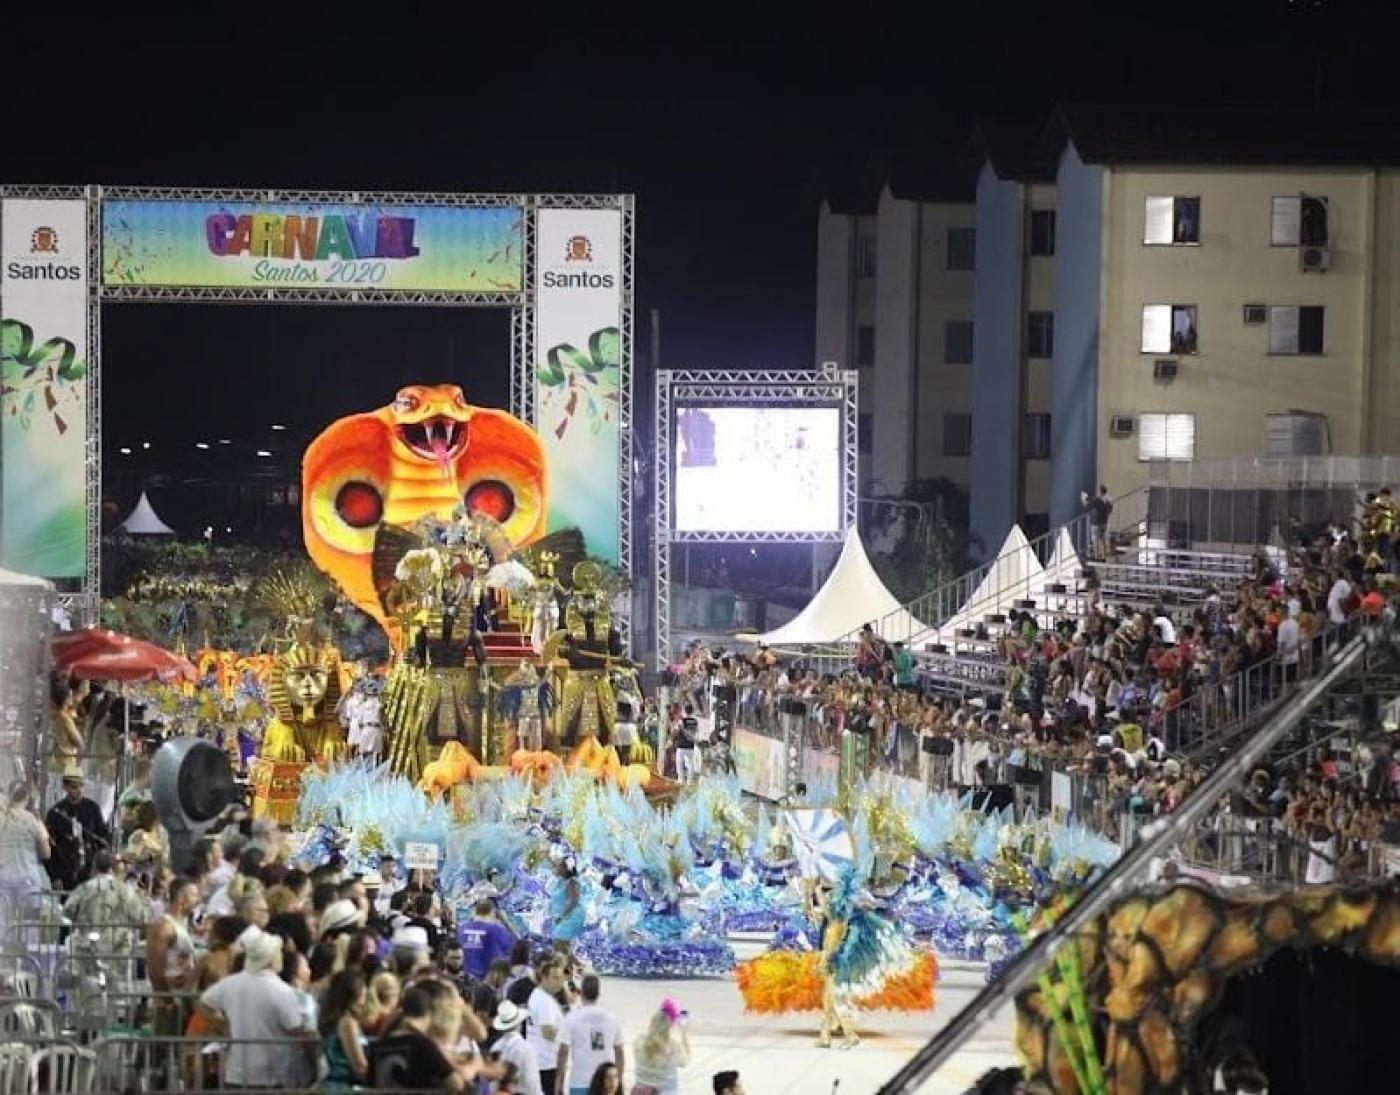 Desfile de escola de samba com grande público #paratodosverem